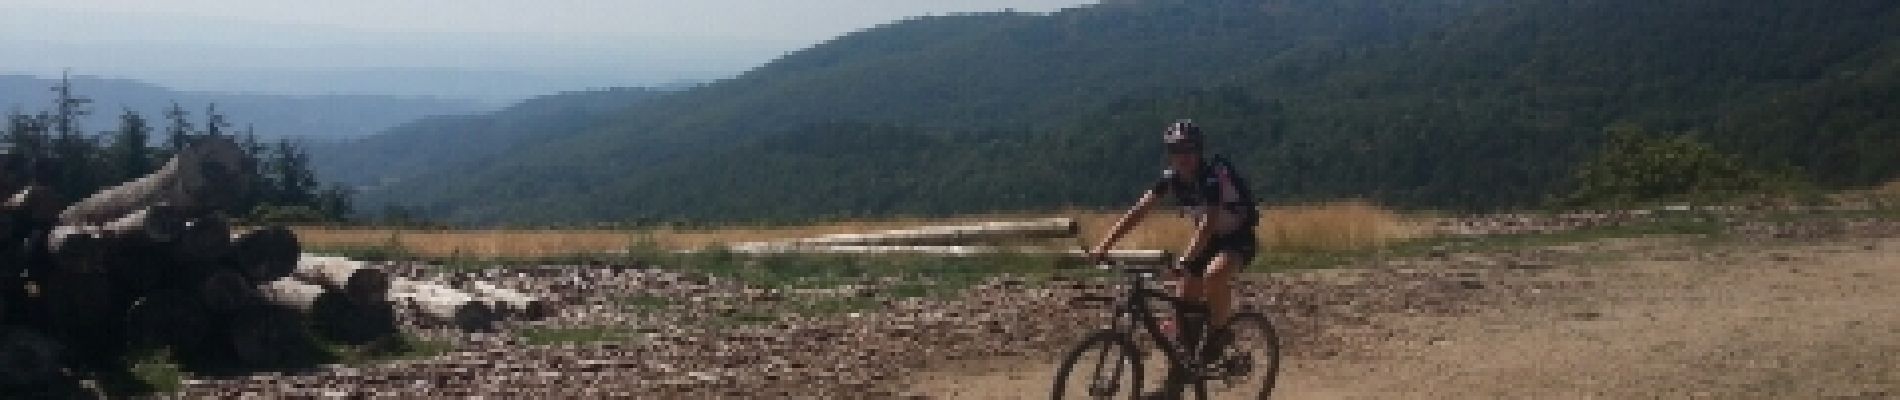 Tocht Mountainbike Joannas - roubreau col des langoustines la boule rocles roubreau - Photo